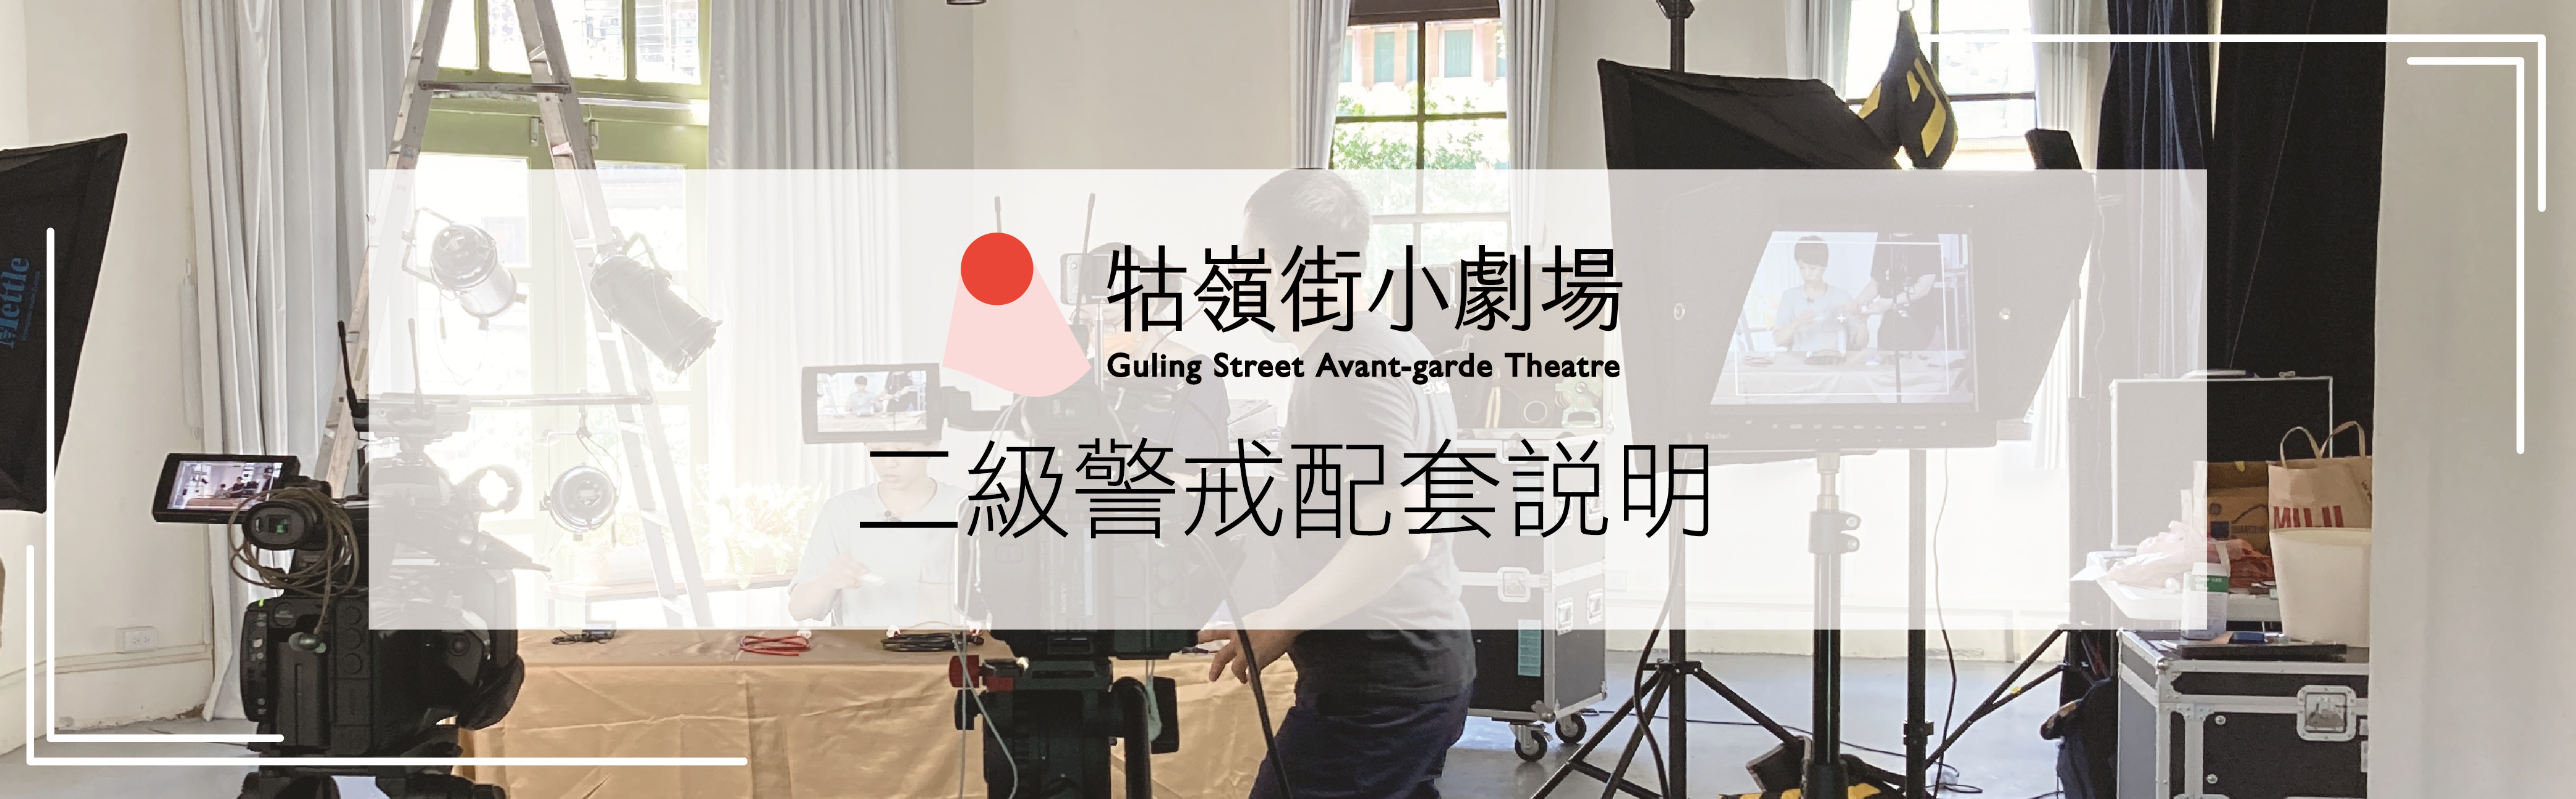 公告】牯嶺街小劇場二級警戒配套說明| 牯嶺街小劇場Guling Street Avant-garde Theatre